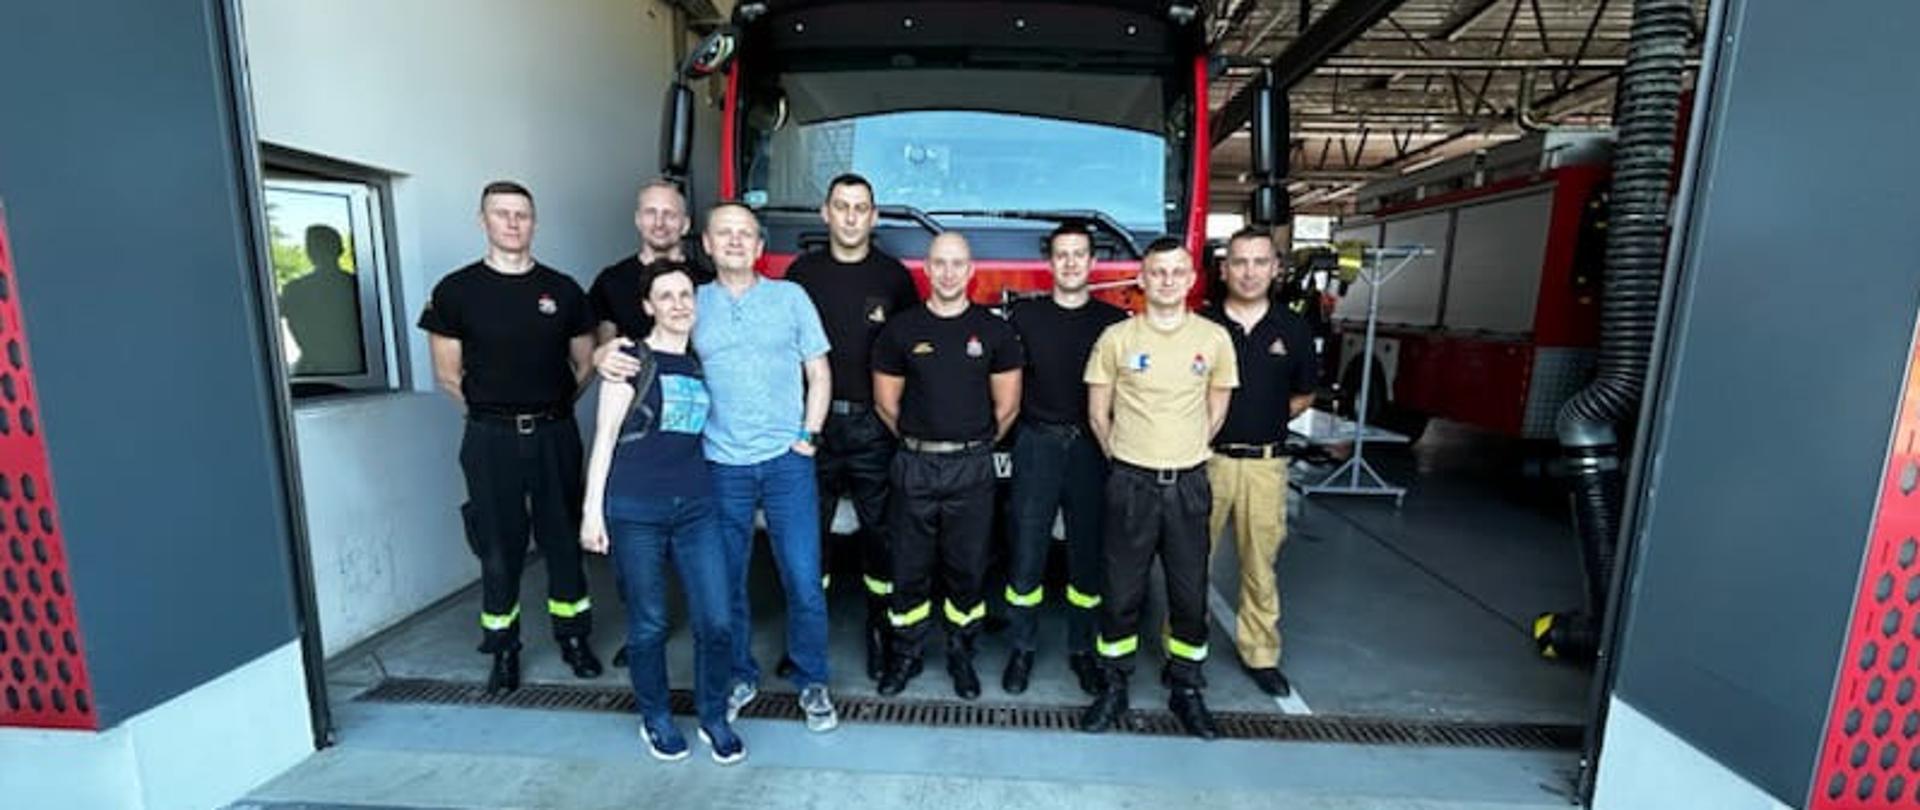 Podziękowanie dla strażaków od mieszkańców Kędzierzyna po uratowanym domu